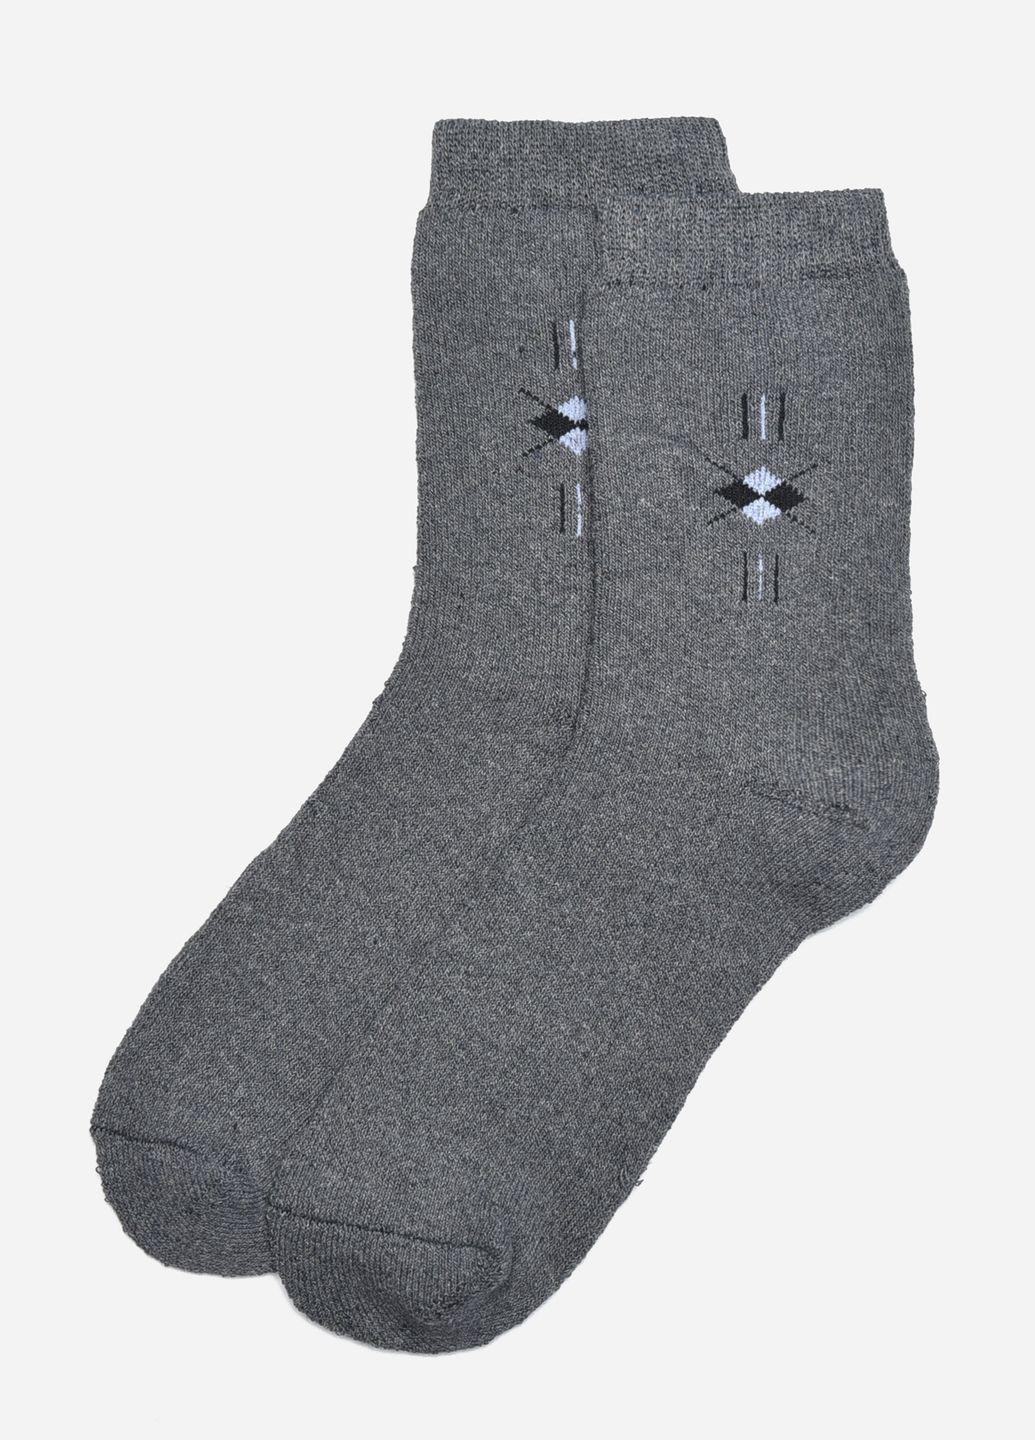 Носки махровые мужские серого цвета размер 40-45 Let's Shop (275928716)